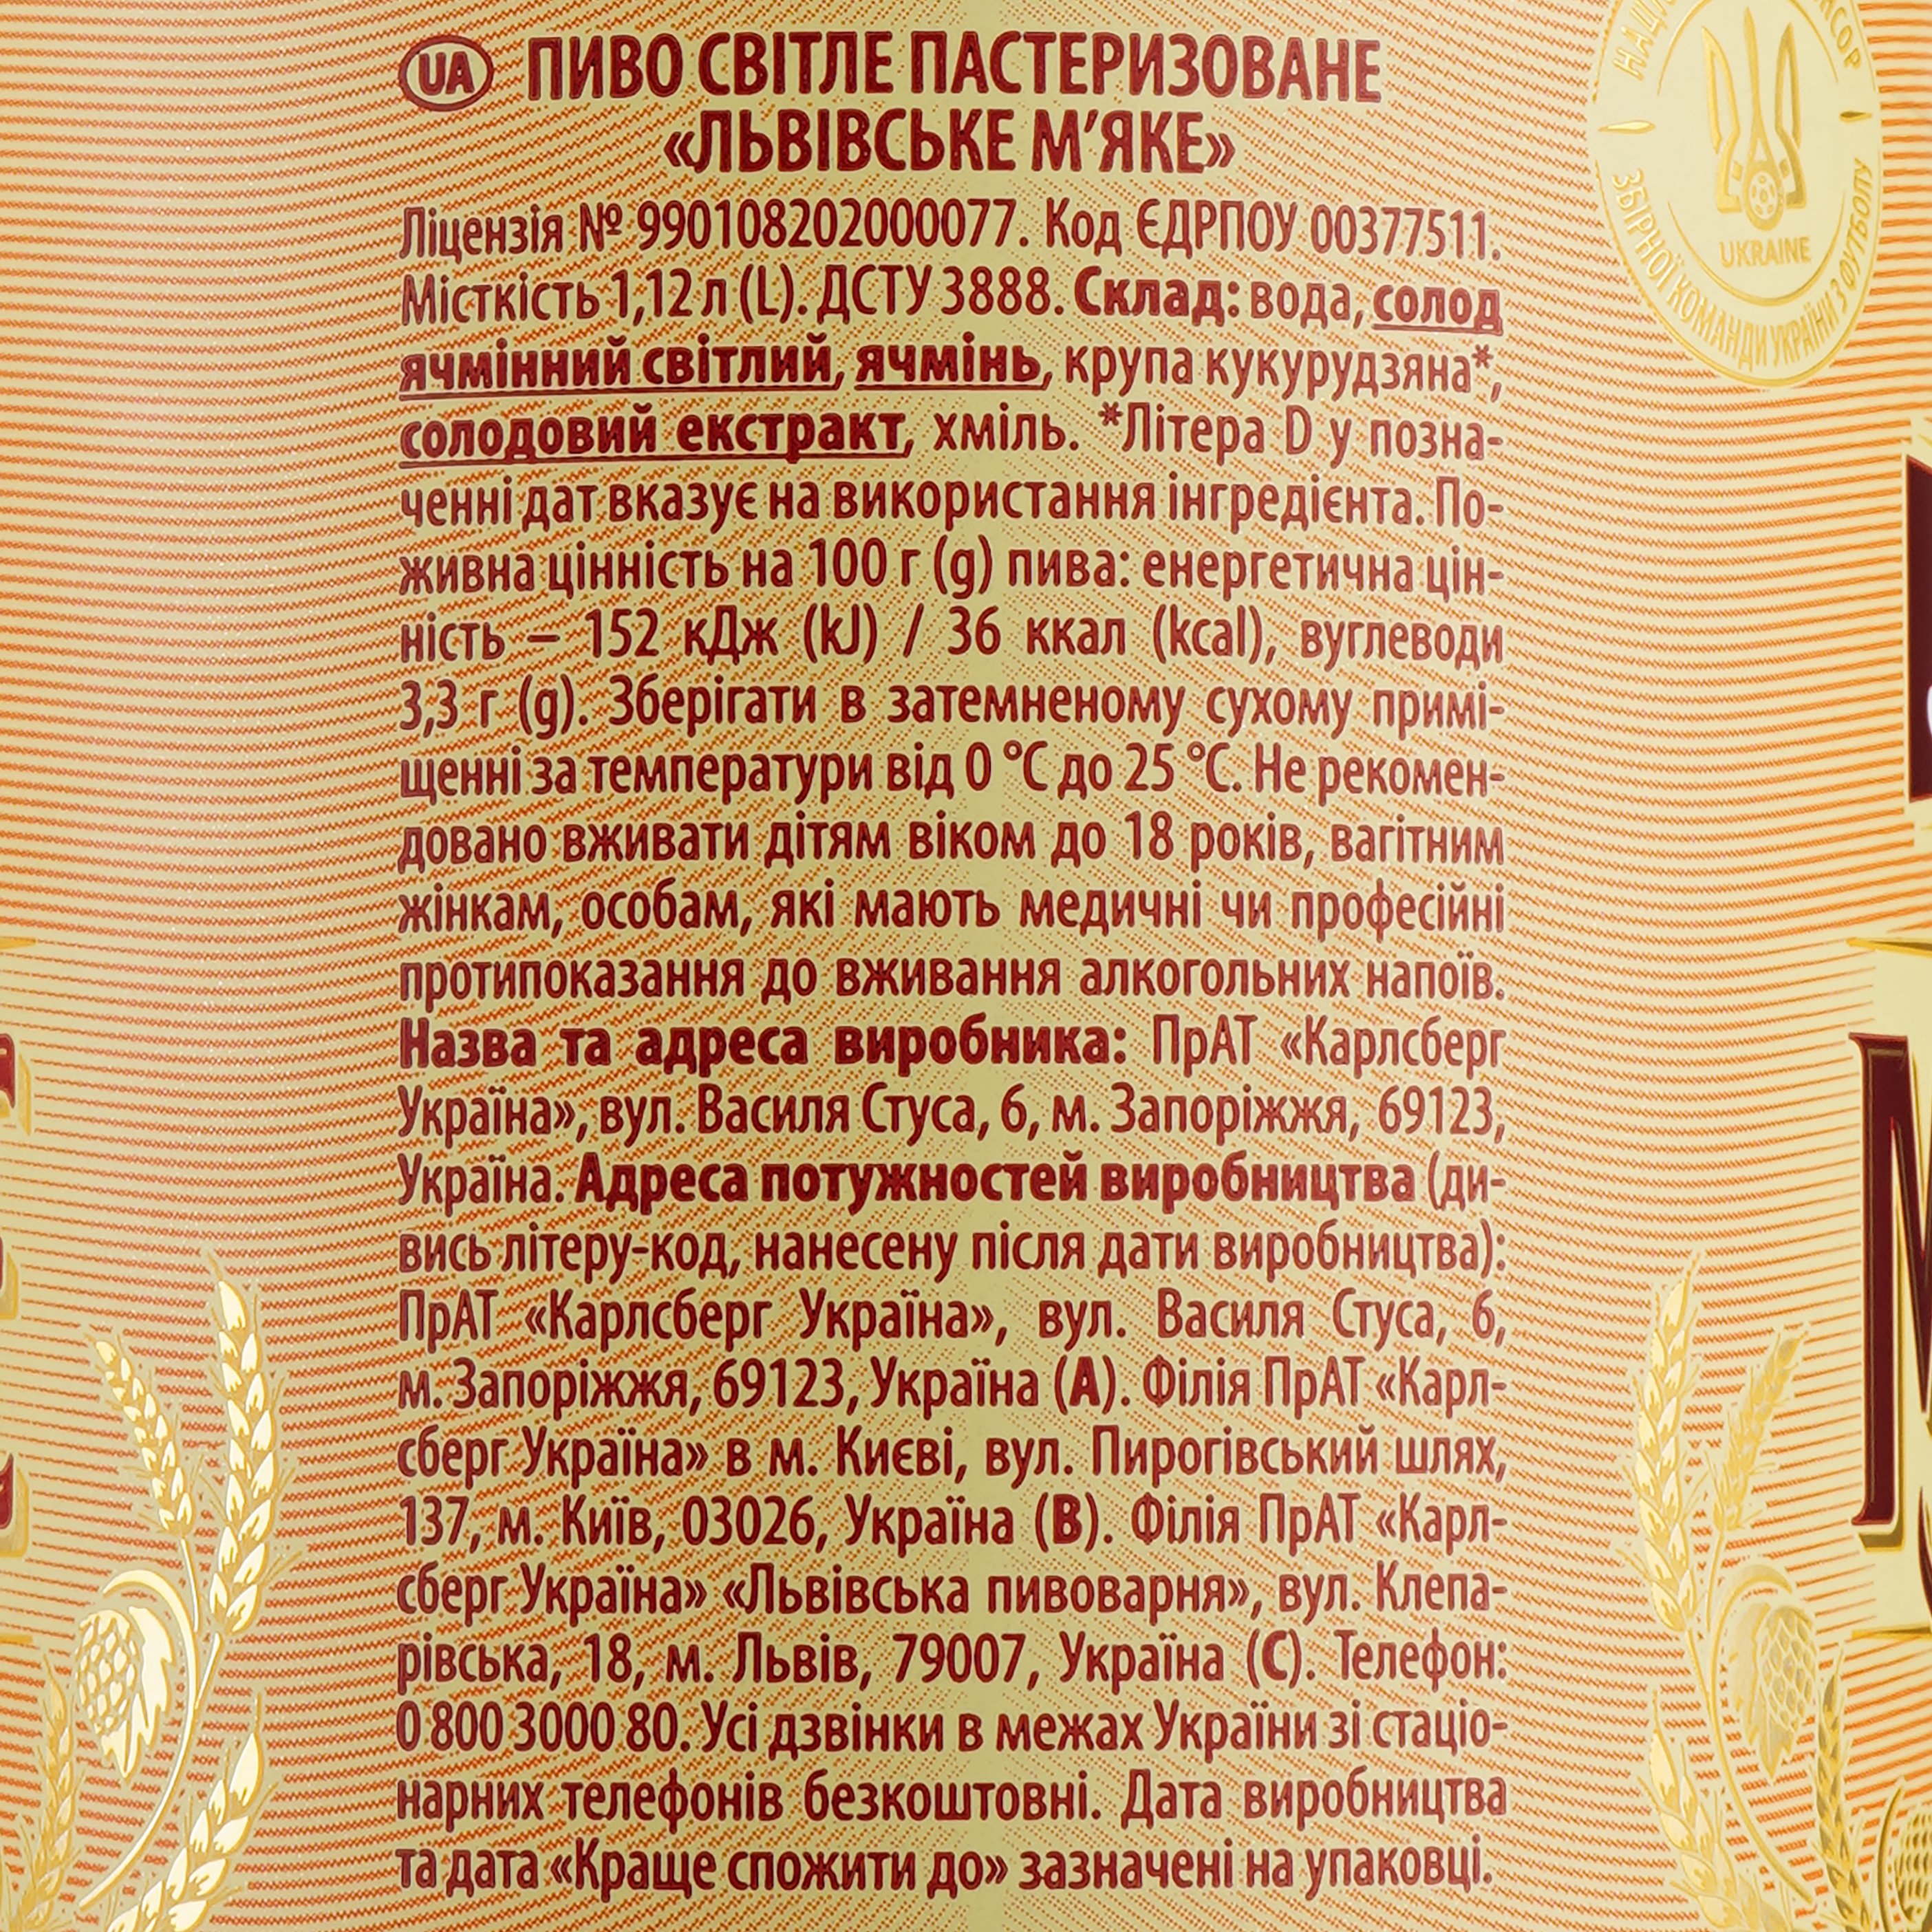 Пиво Львівське М'яке, светлое, 4,2%,1,12 л - фото 3